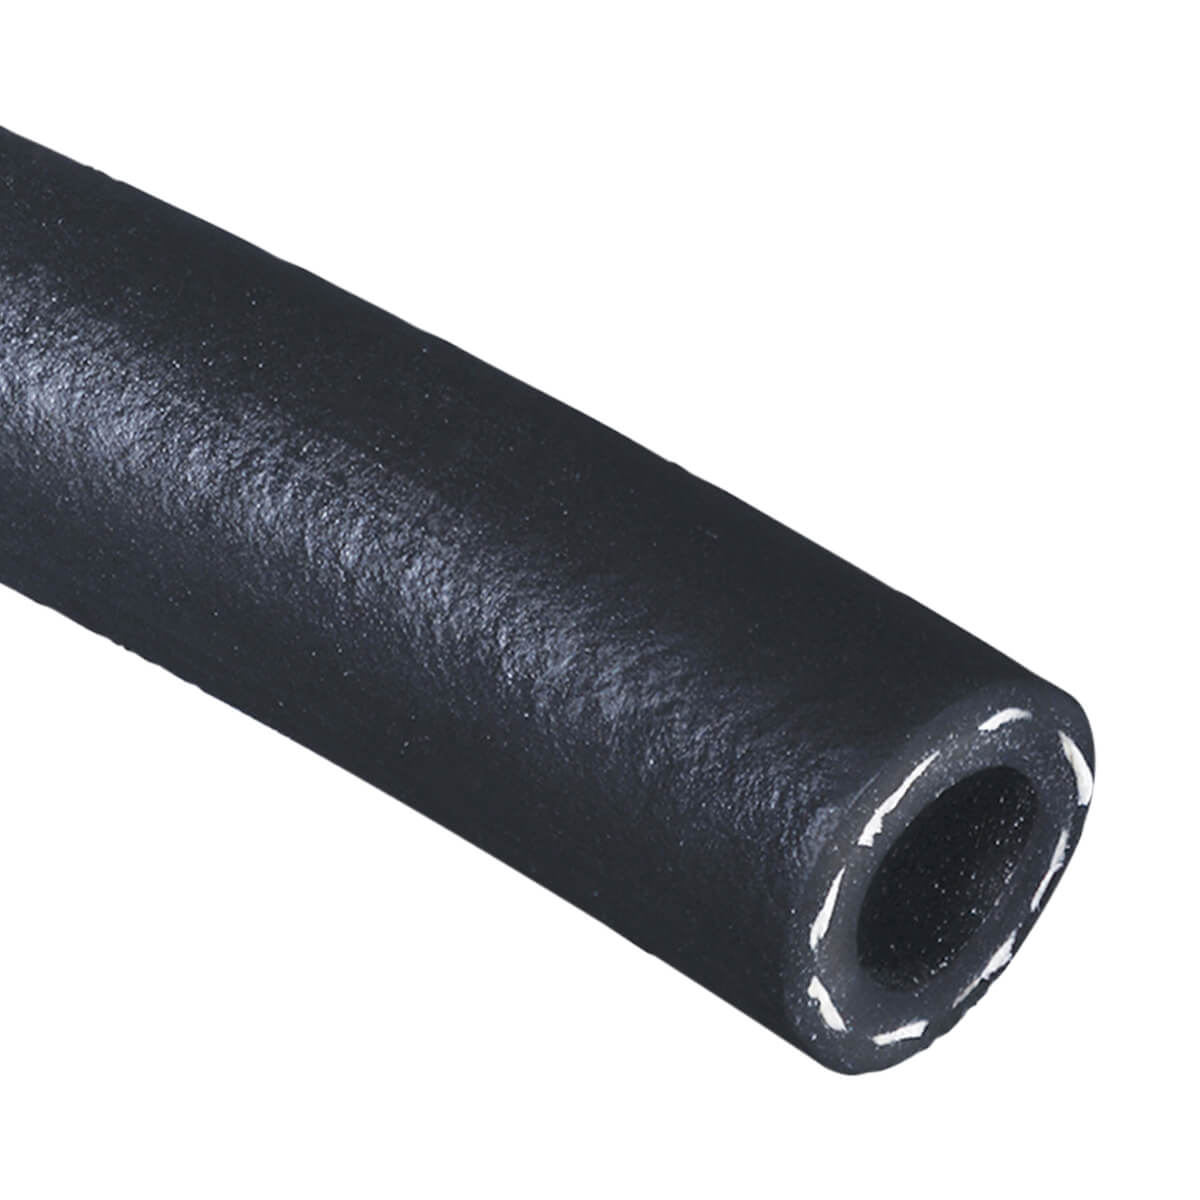 Black 200 PSI Multipurpose - AG 200 - Air & Water Hose - 1/2-in - Price Per ft